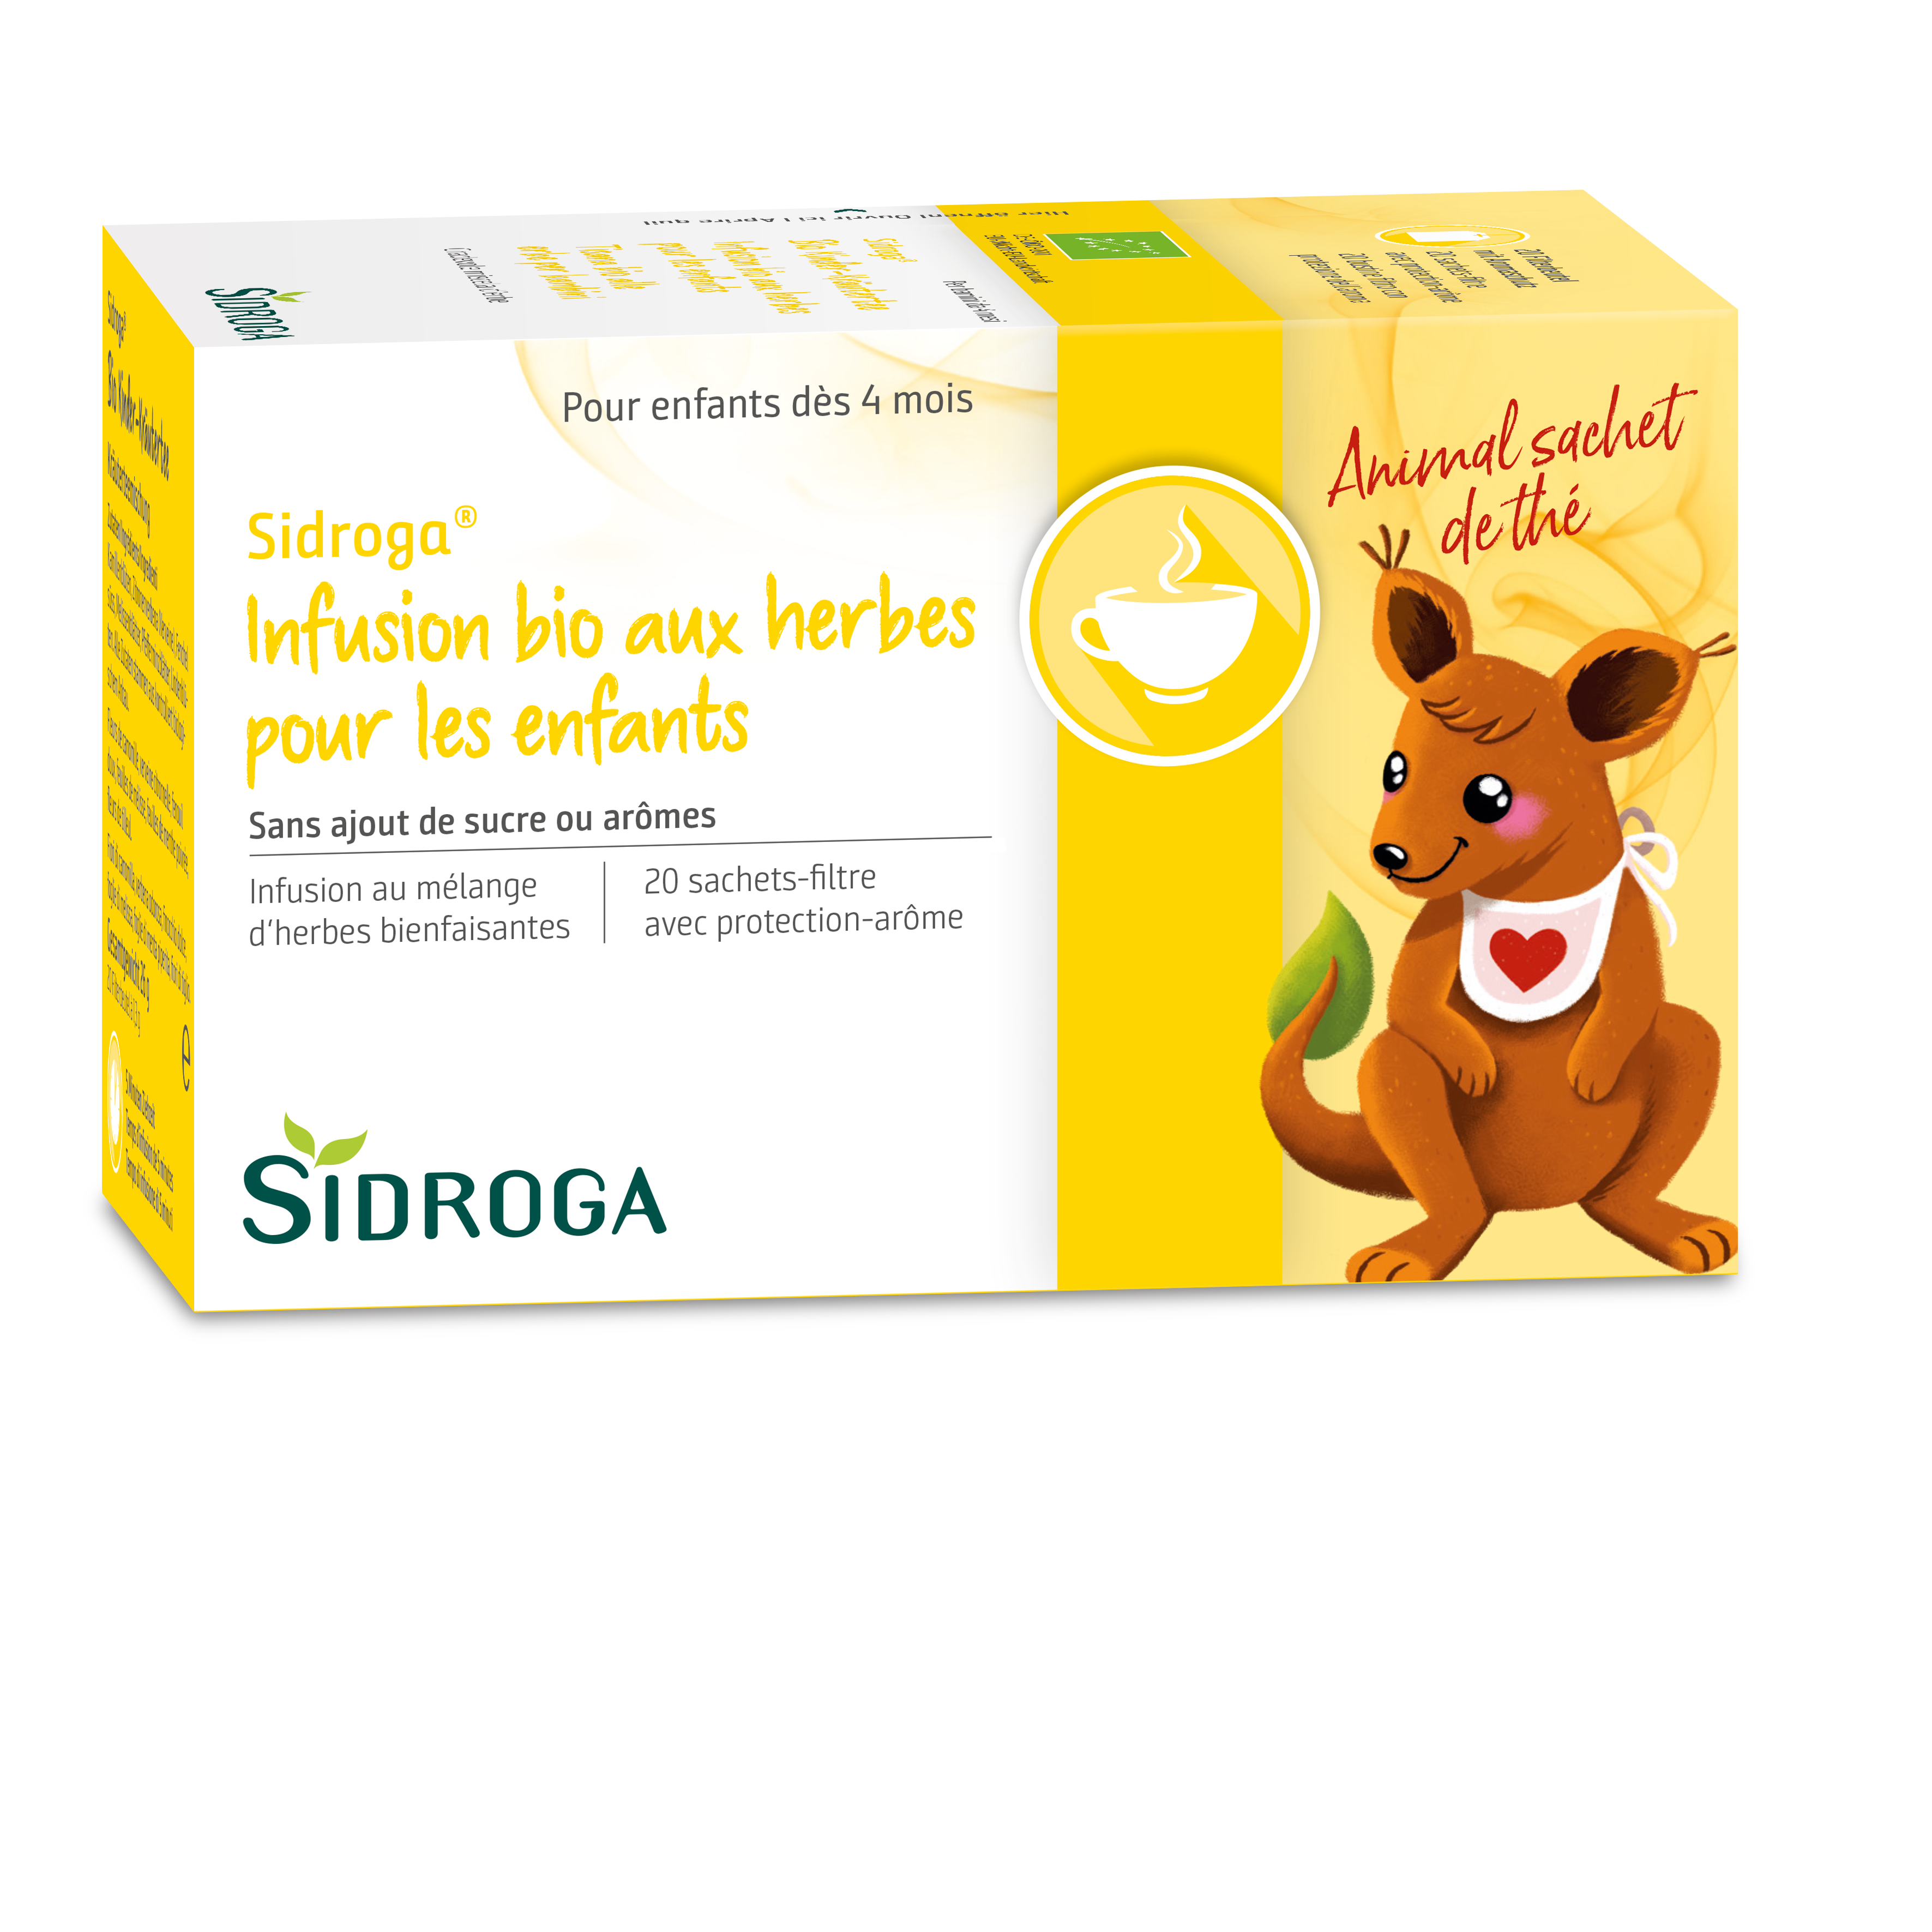 Sidroga infusion bio aux herbes pour les enfants, image 2 sur 3